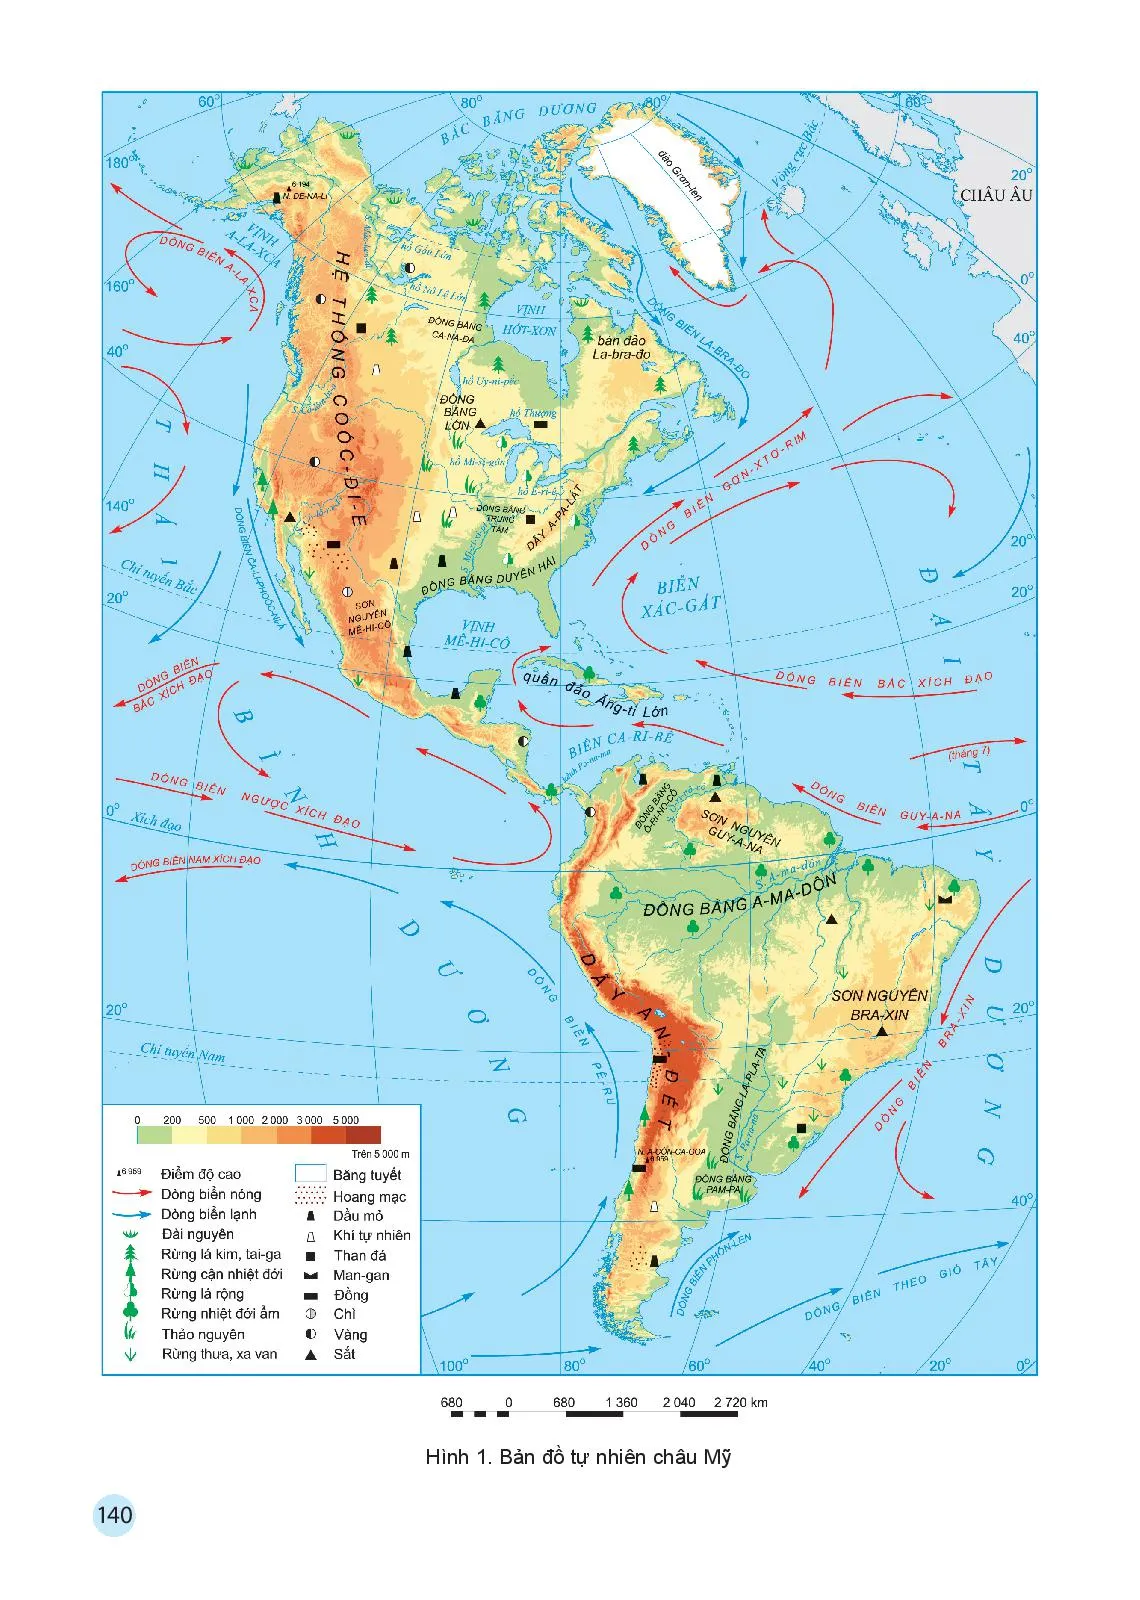 Bài 13 Vị trí địa lí, phạm vi châu Mỹ. Sự phát kiến ra châu Mỹ